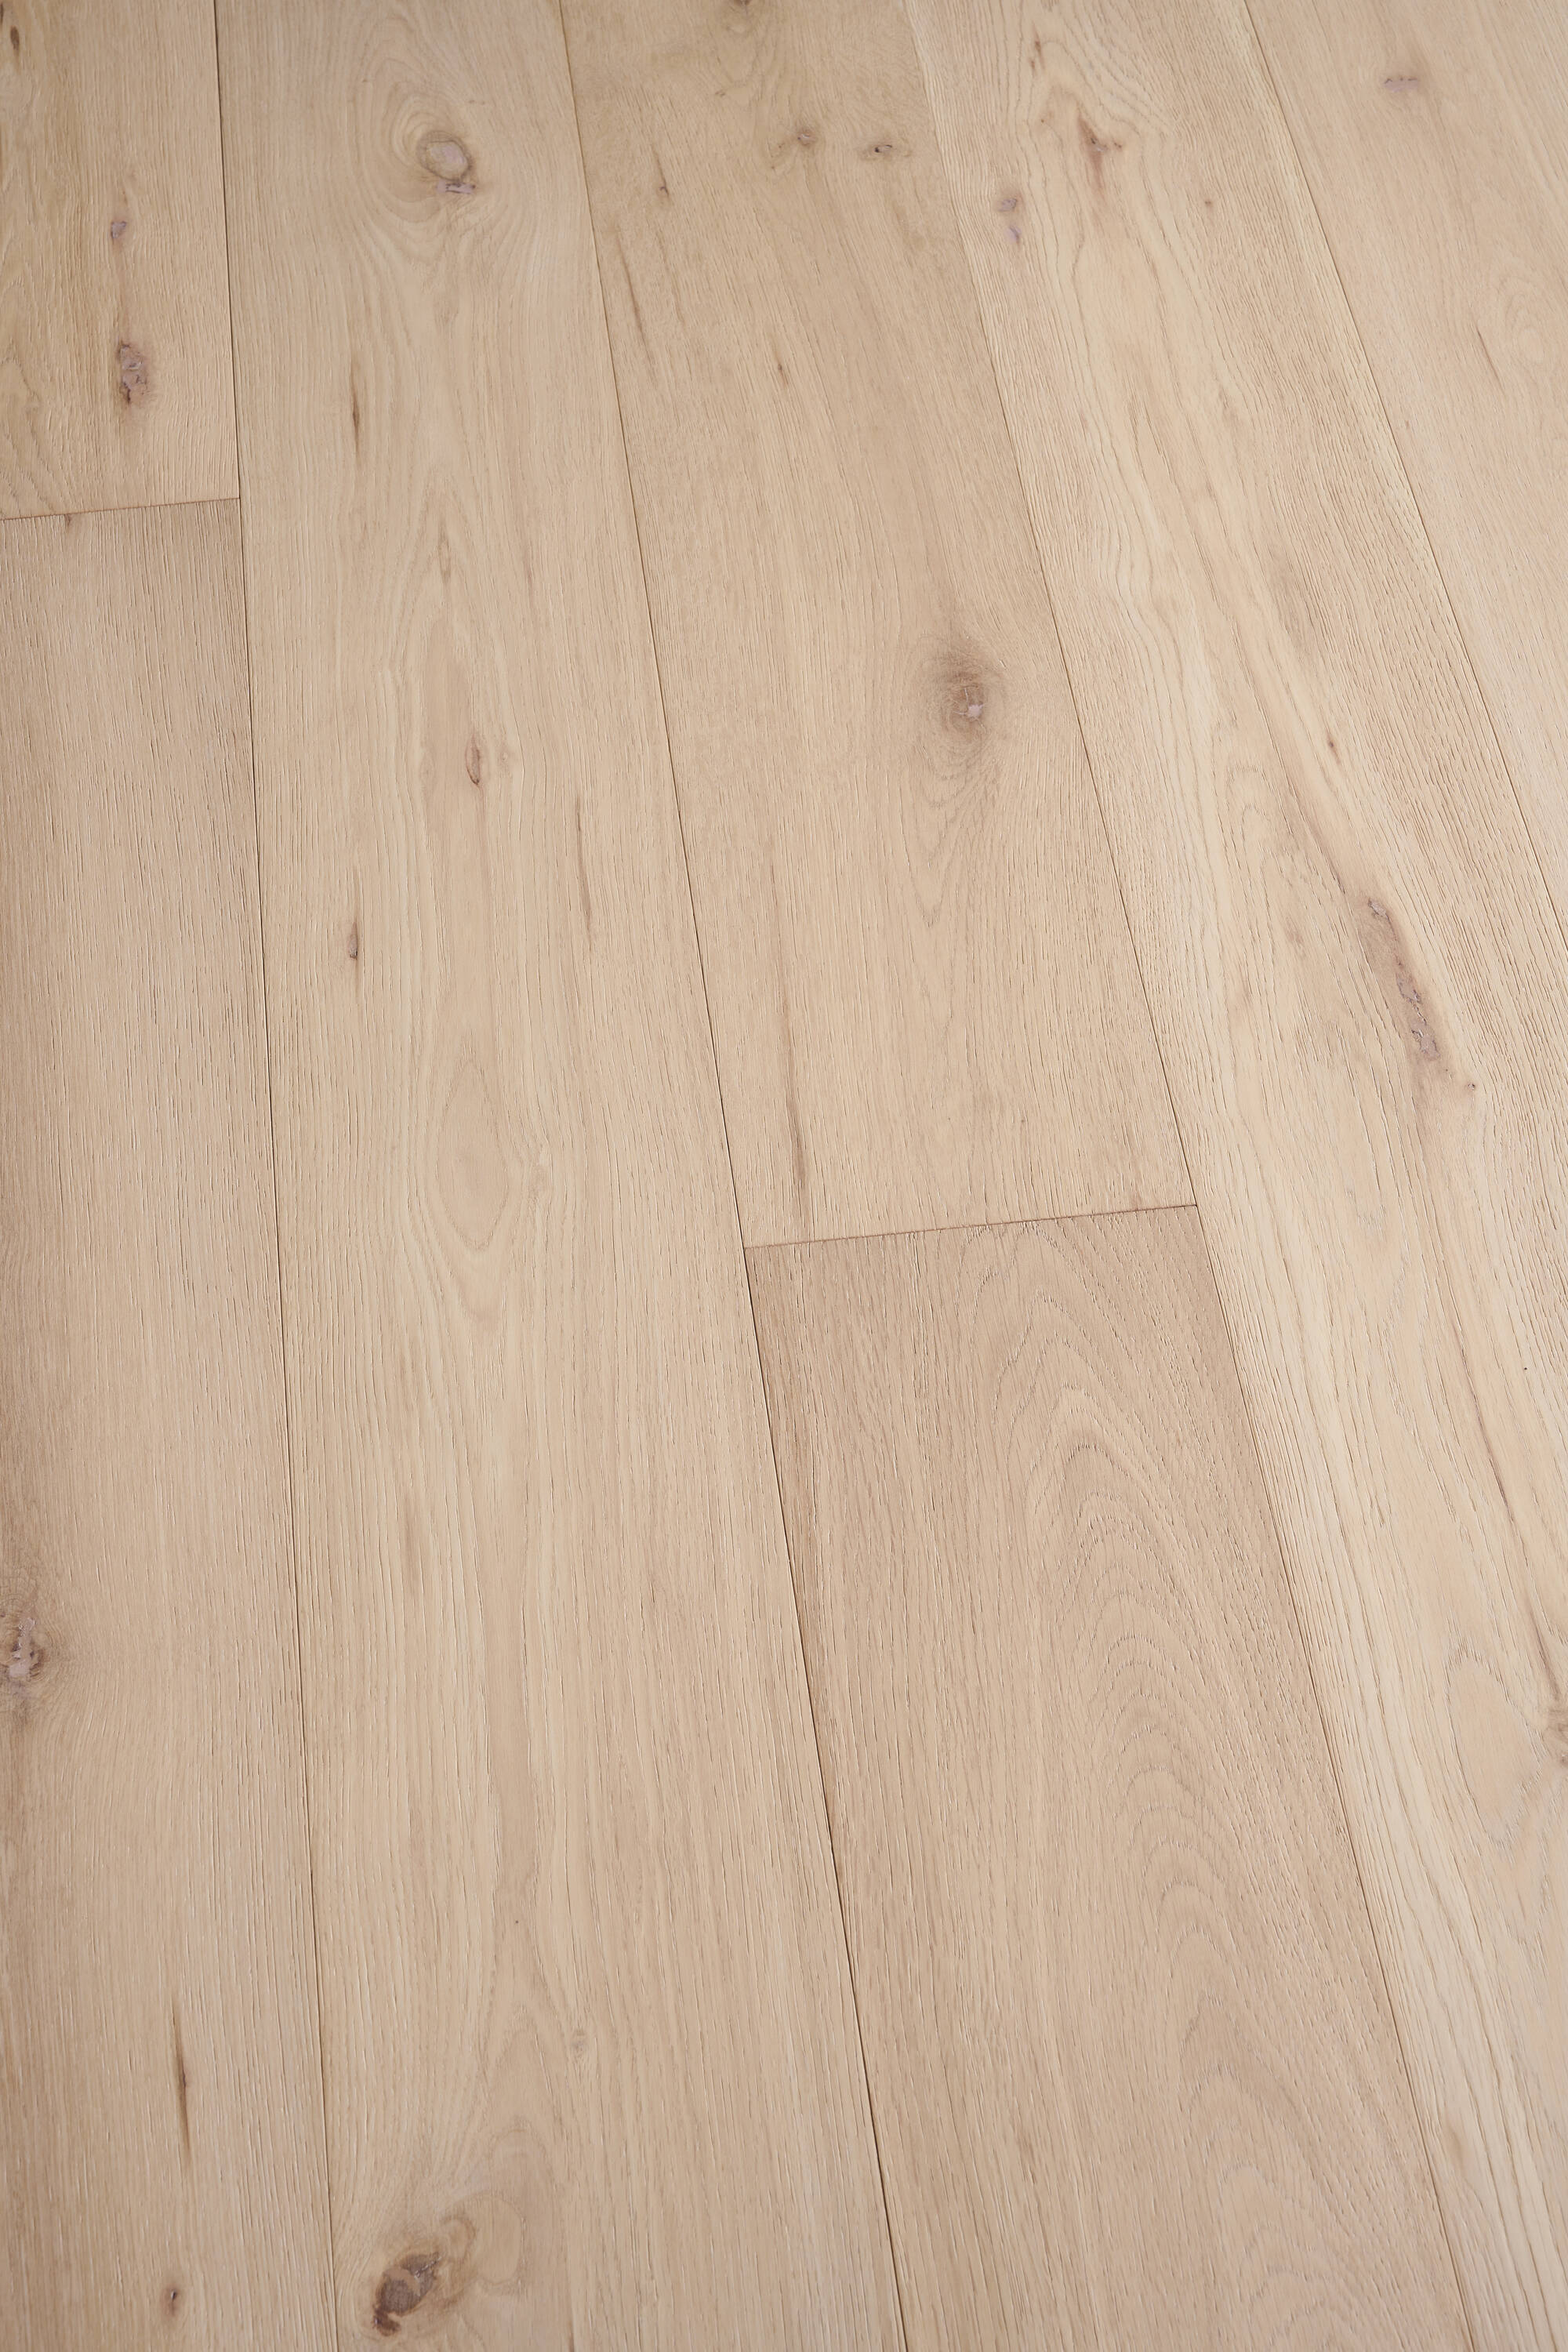 20+ Unique Wood Floor Patterns